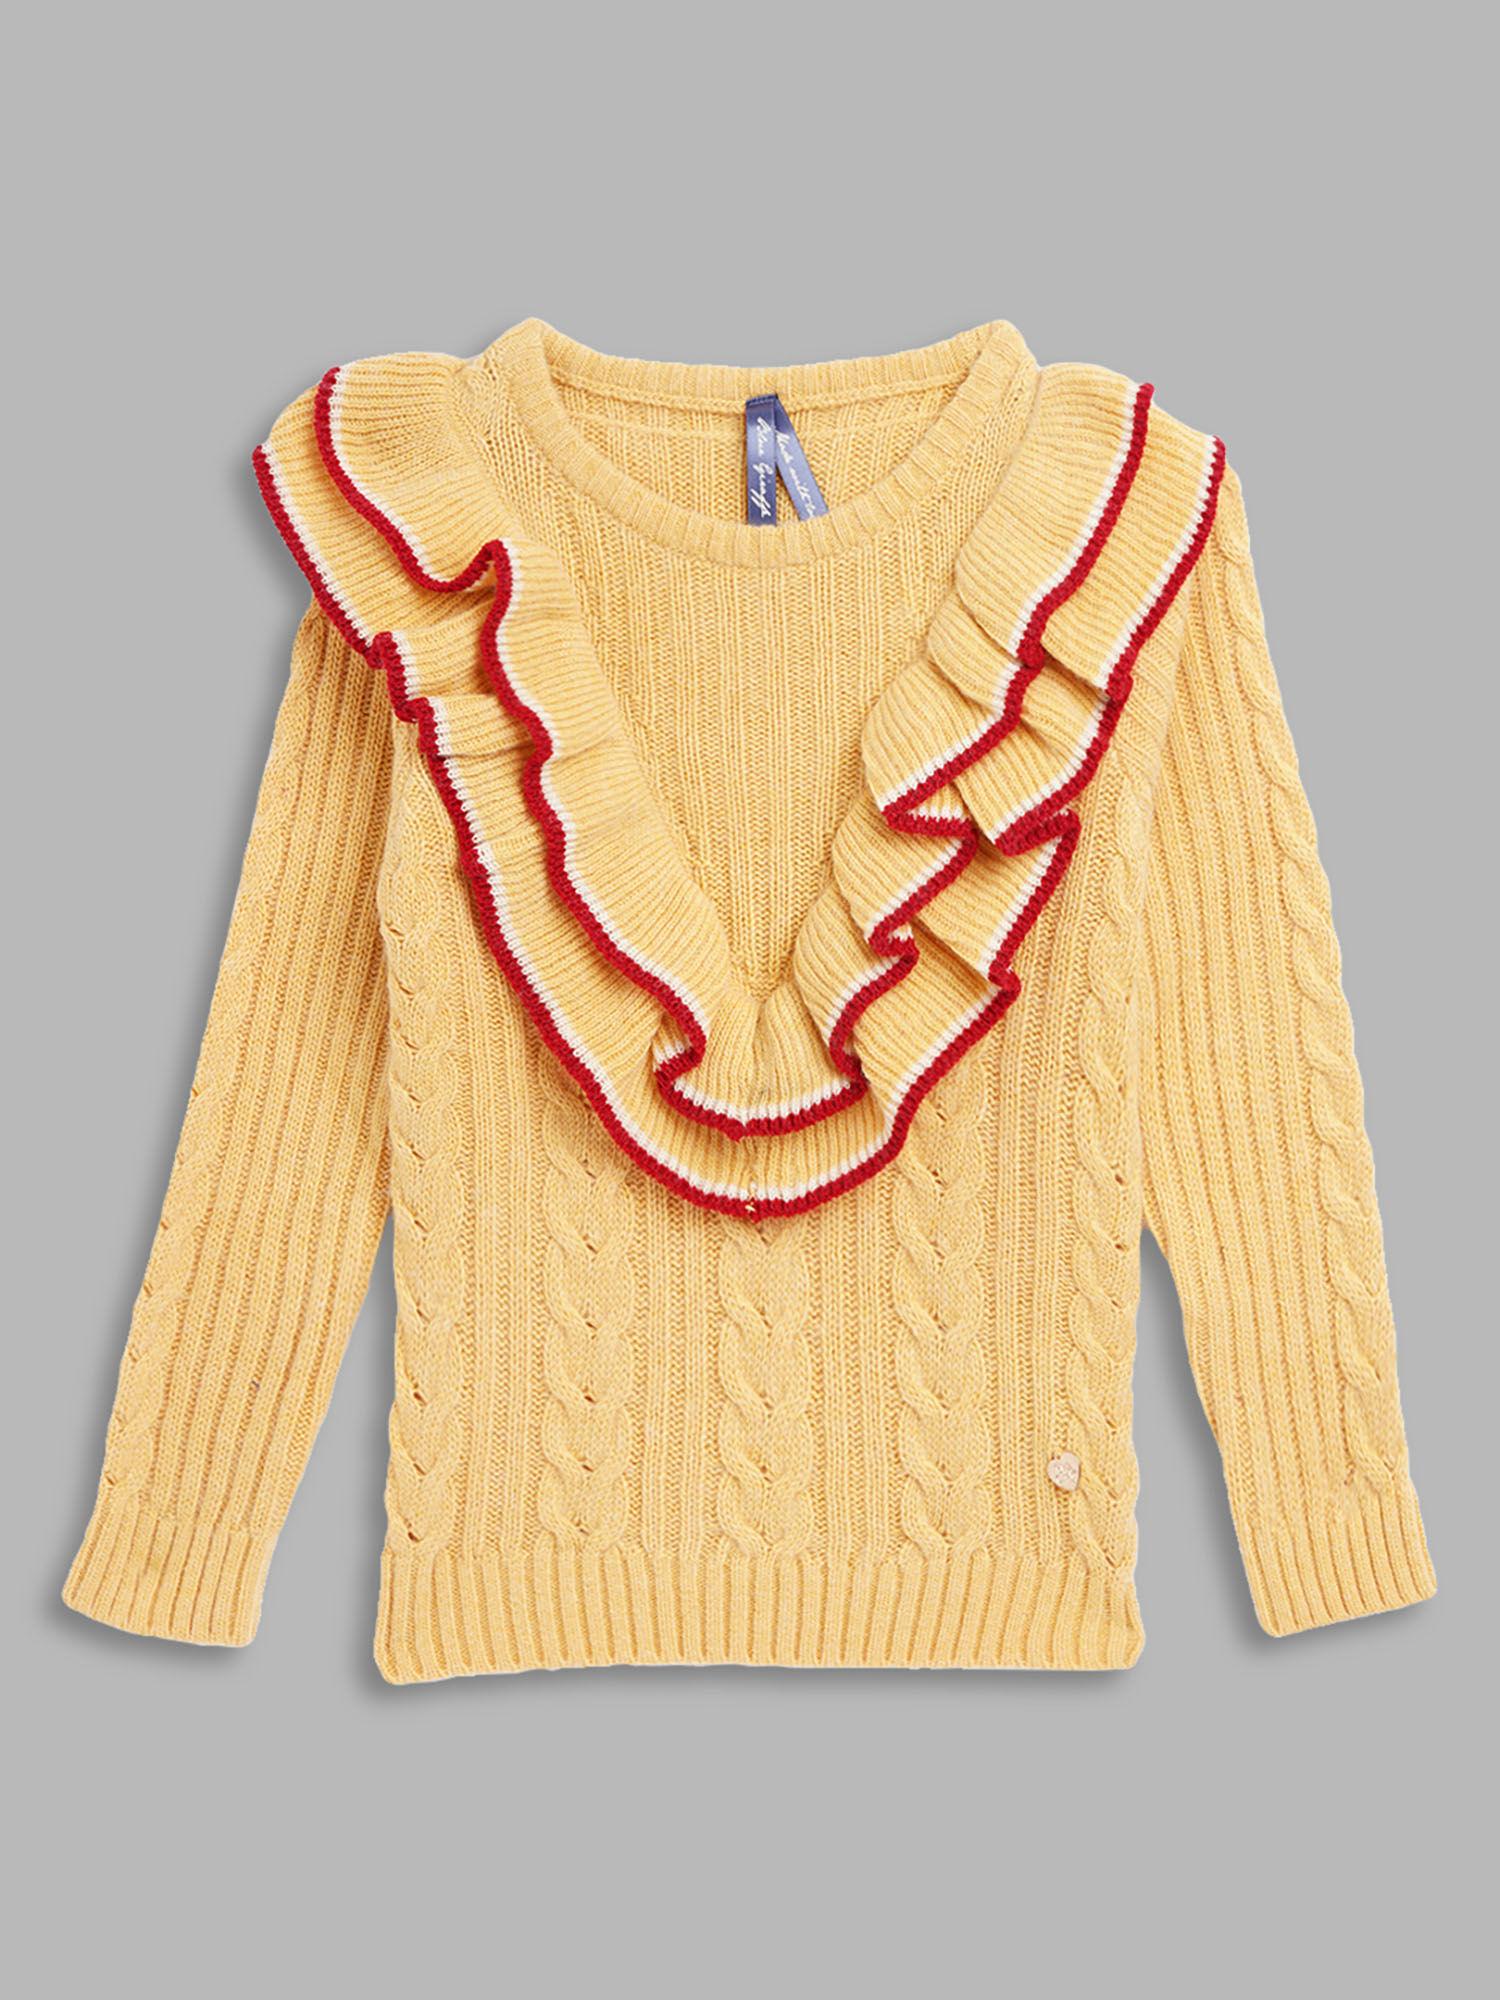 braid-girls-yellow-sweater